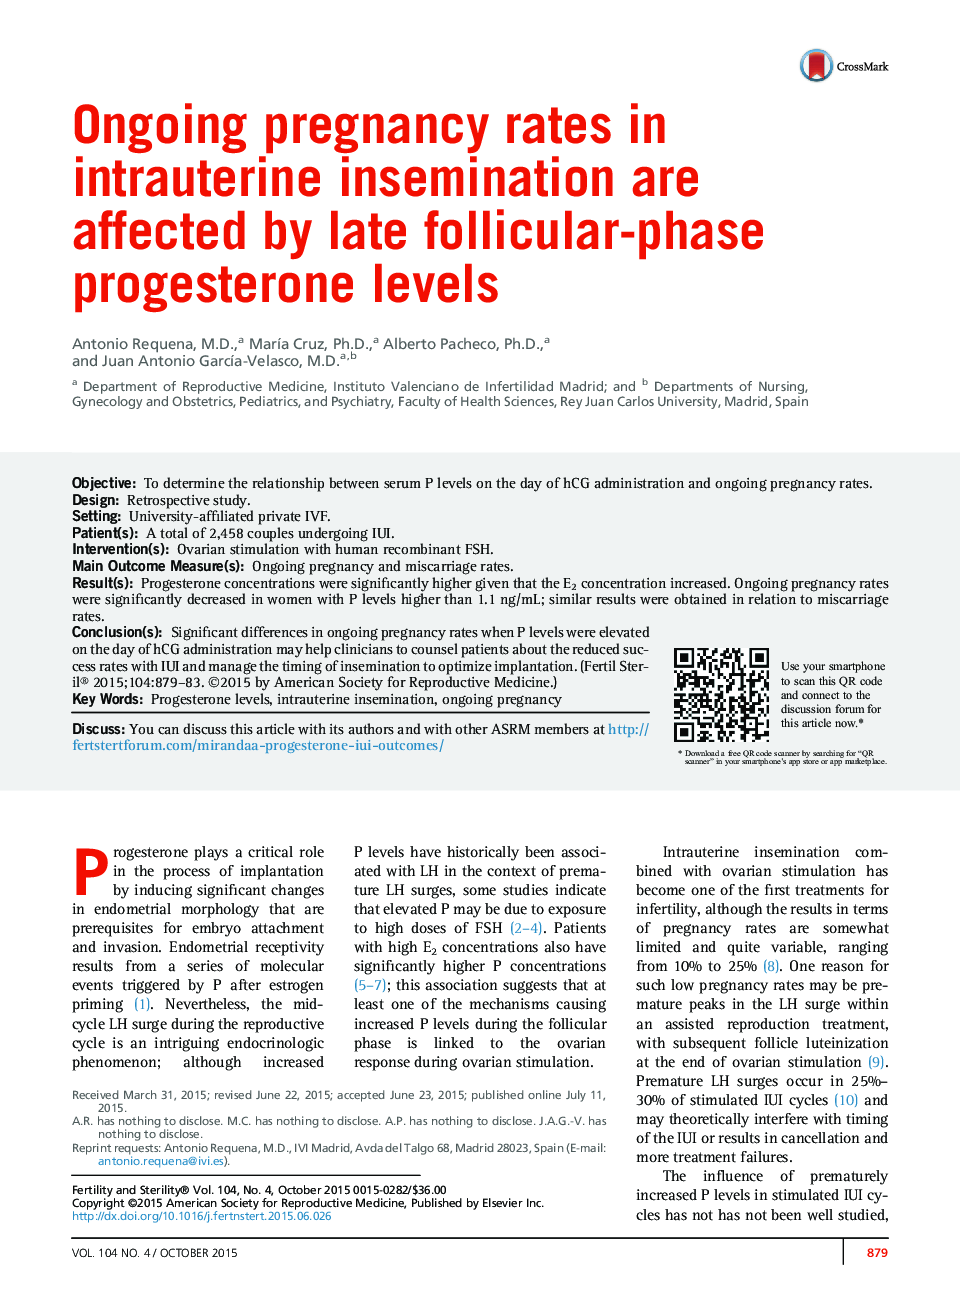 میزان بارداری در حال انجام در تلقیح داخل رحمی با شدت پروژسترون فاز فولیکولی فاز تأثیر می گذارد 